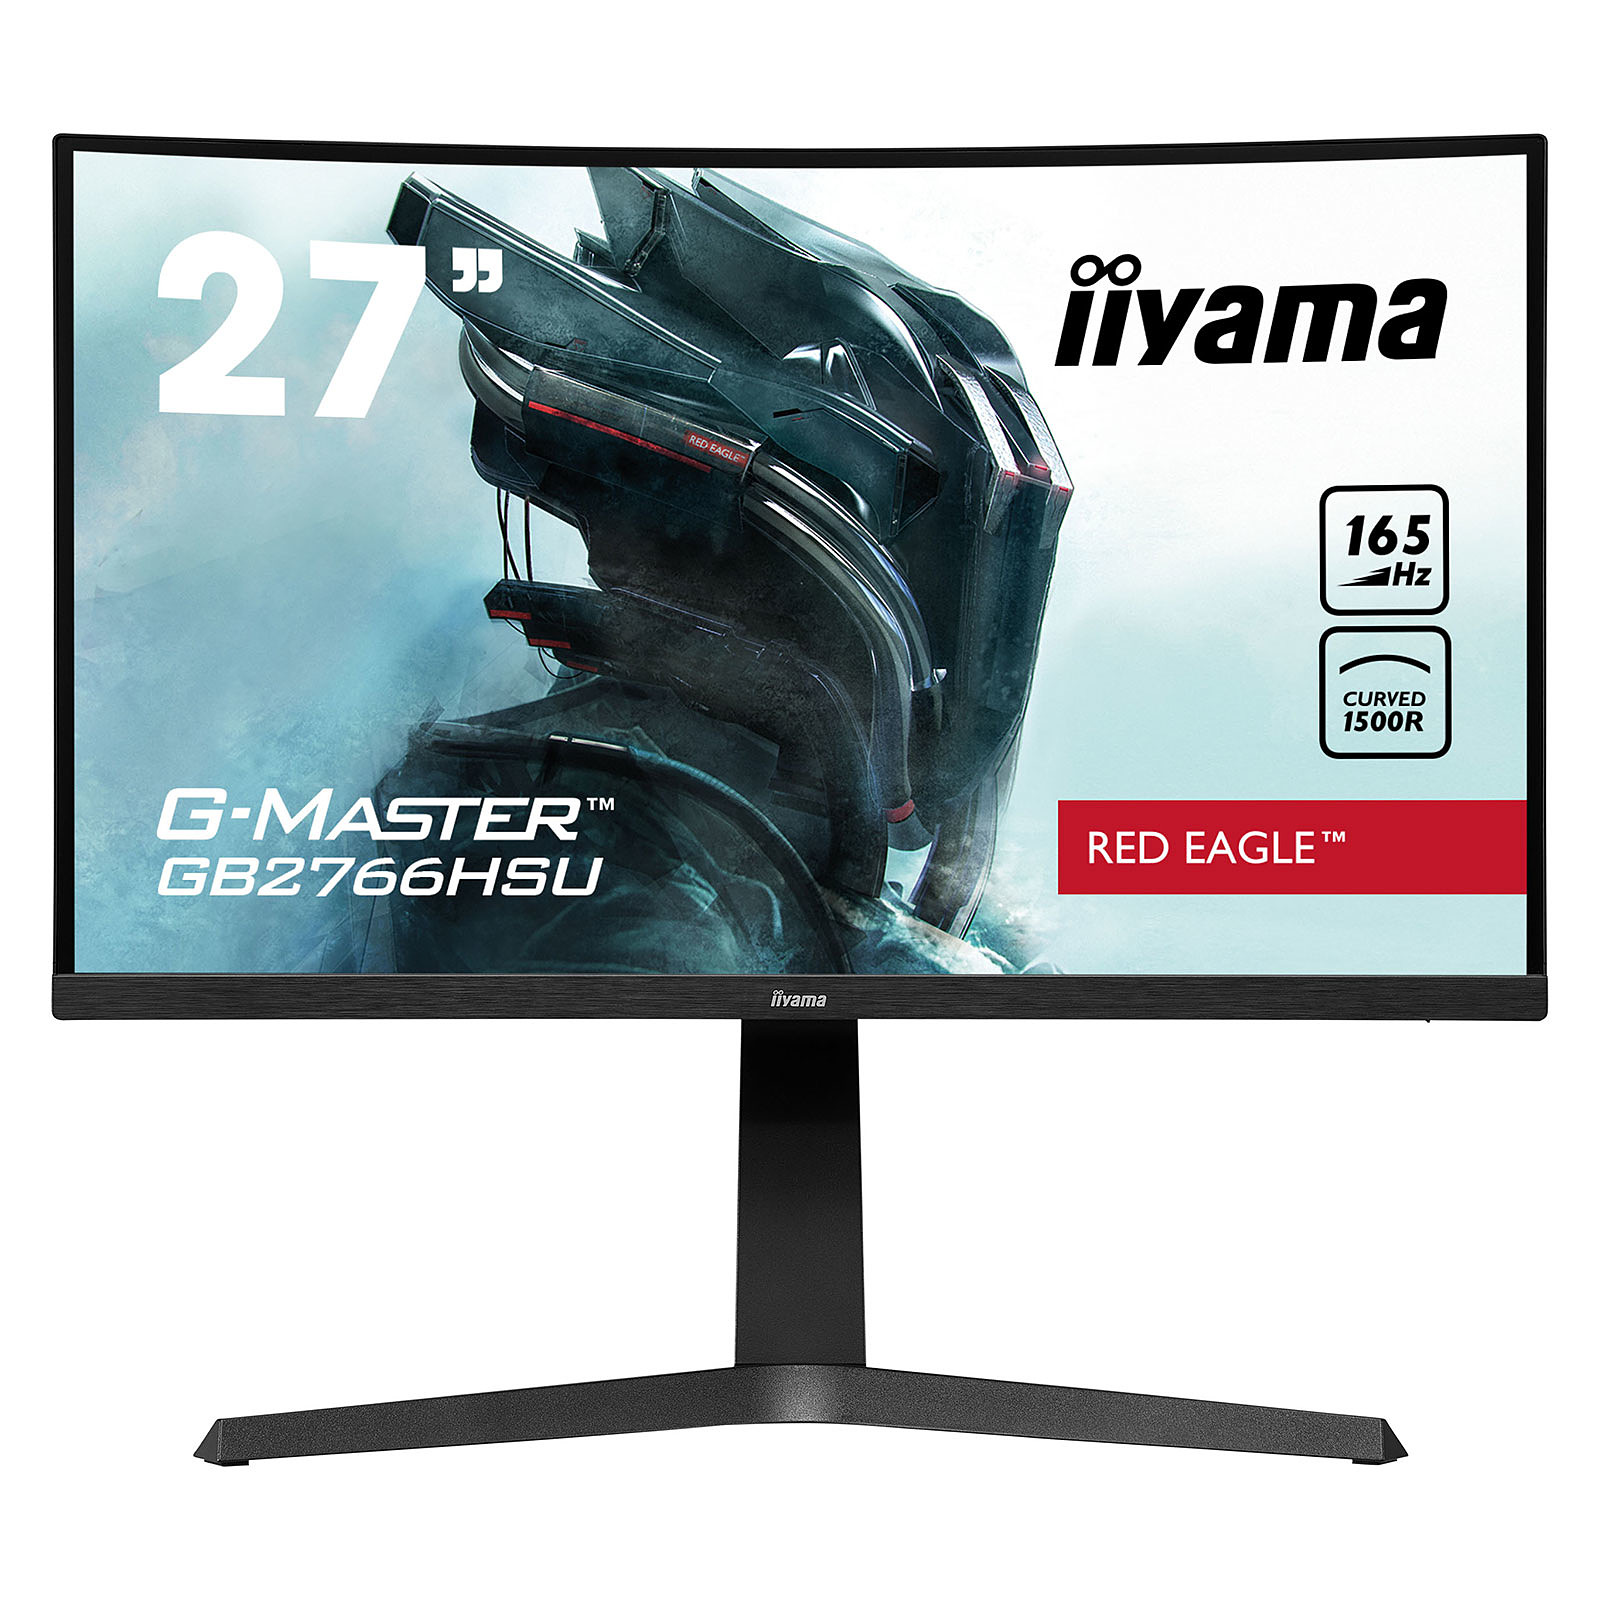 iiyama 27" LED - G-MASTER GB2766HSU-B1 Red Eagle - Ecran PC iiyama